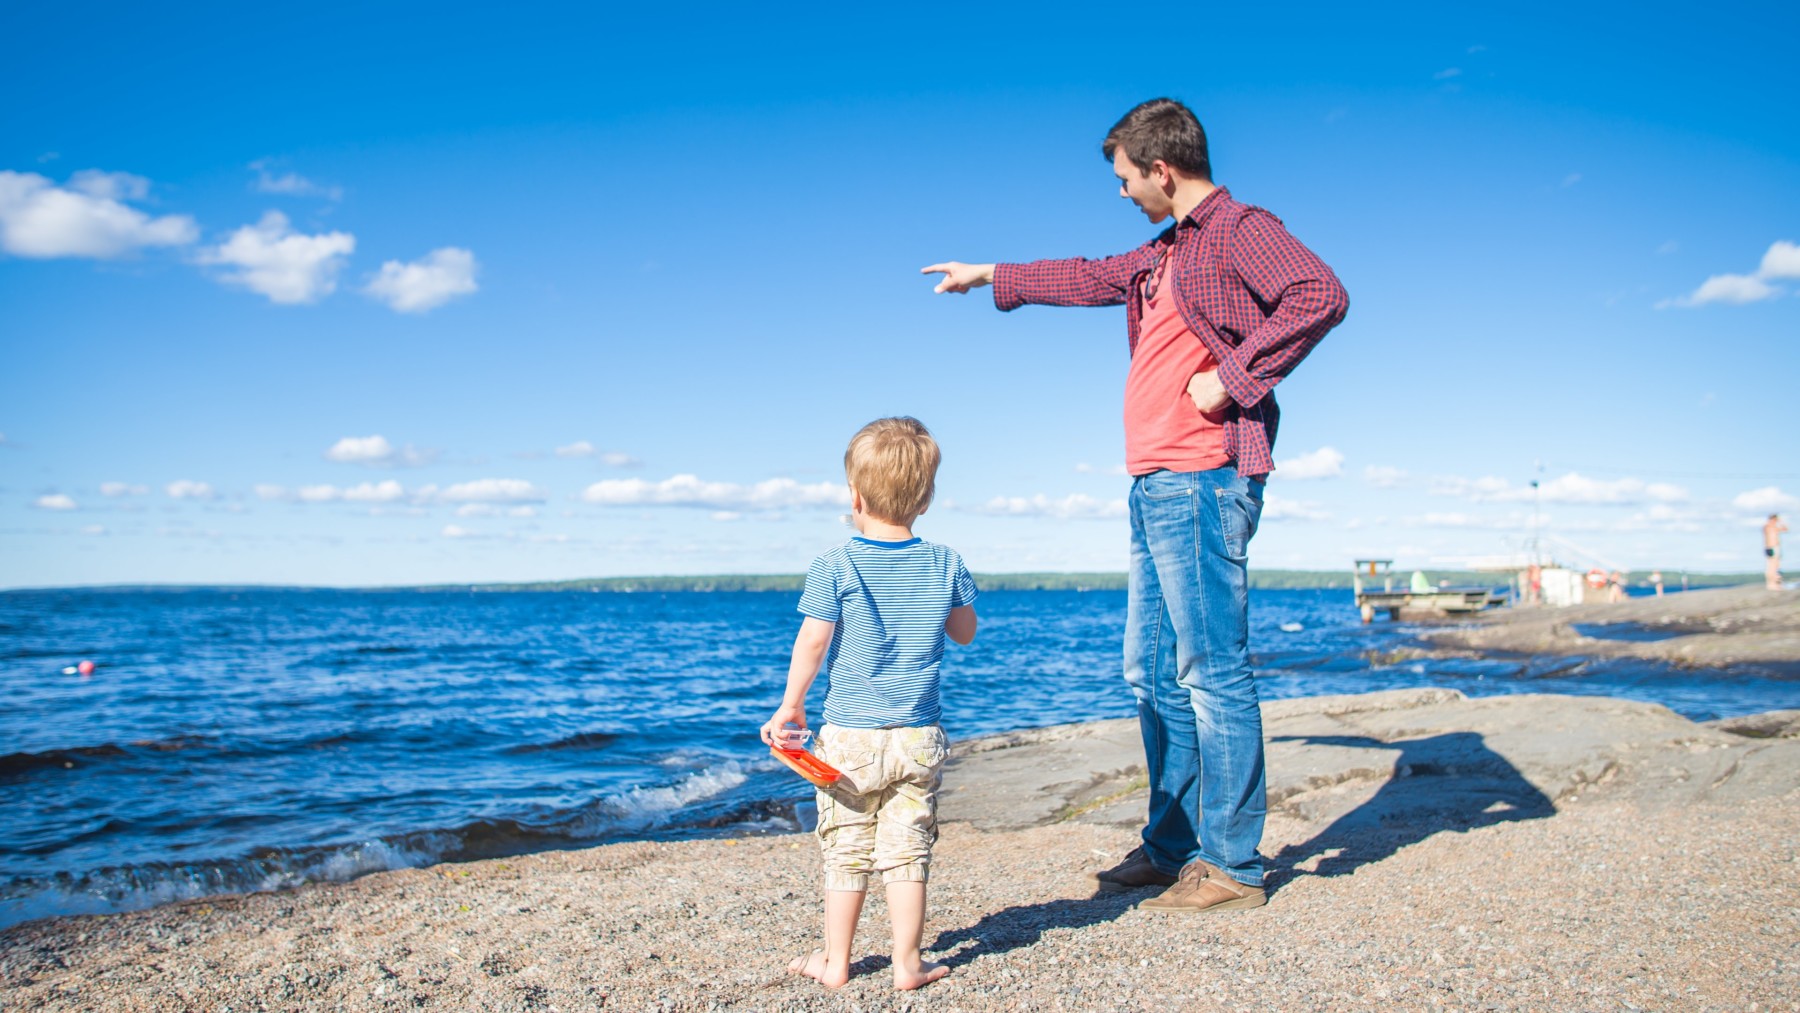 Na margem de um lago, um homem aponta para algo no horizonte enquanto uma criança olha na mesma direção.